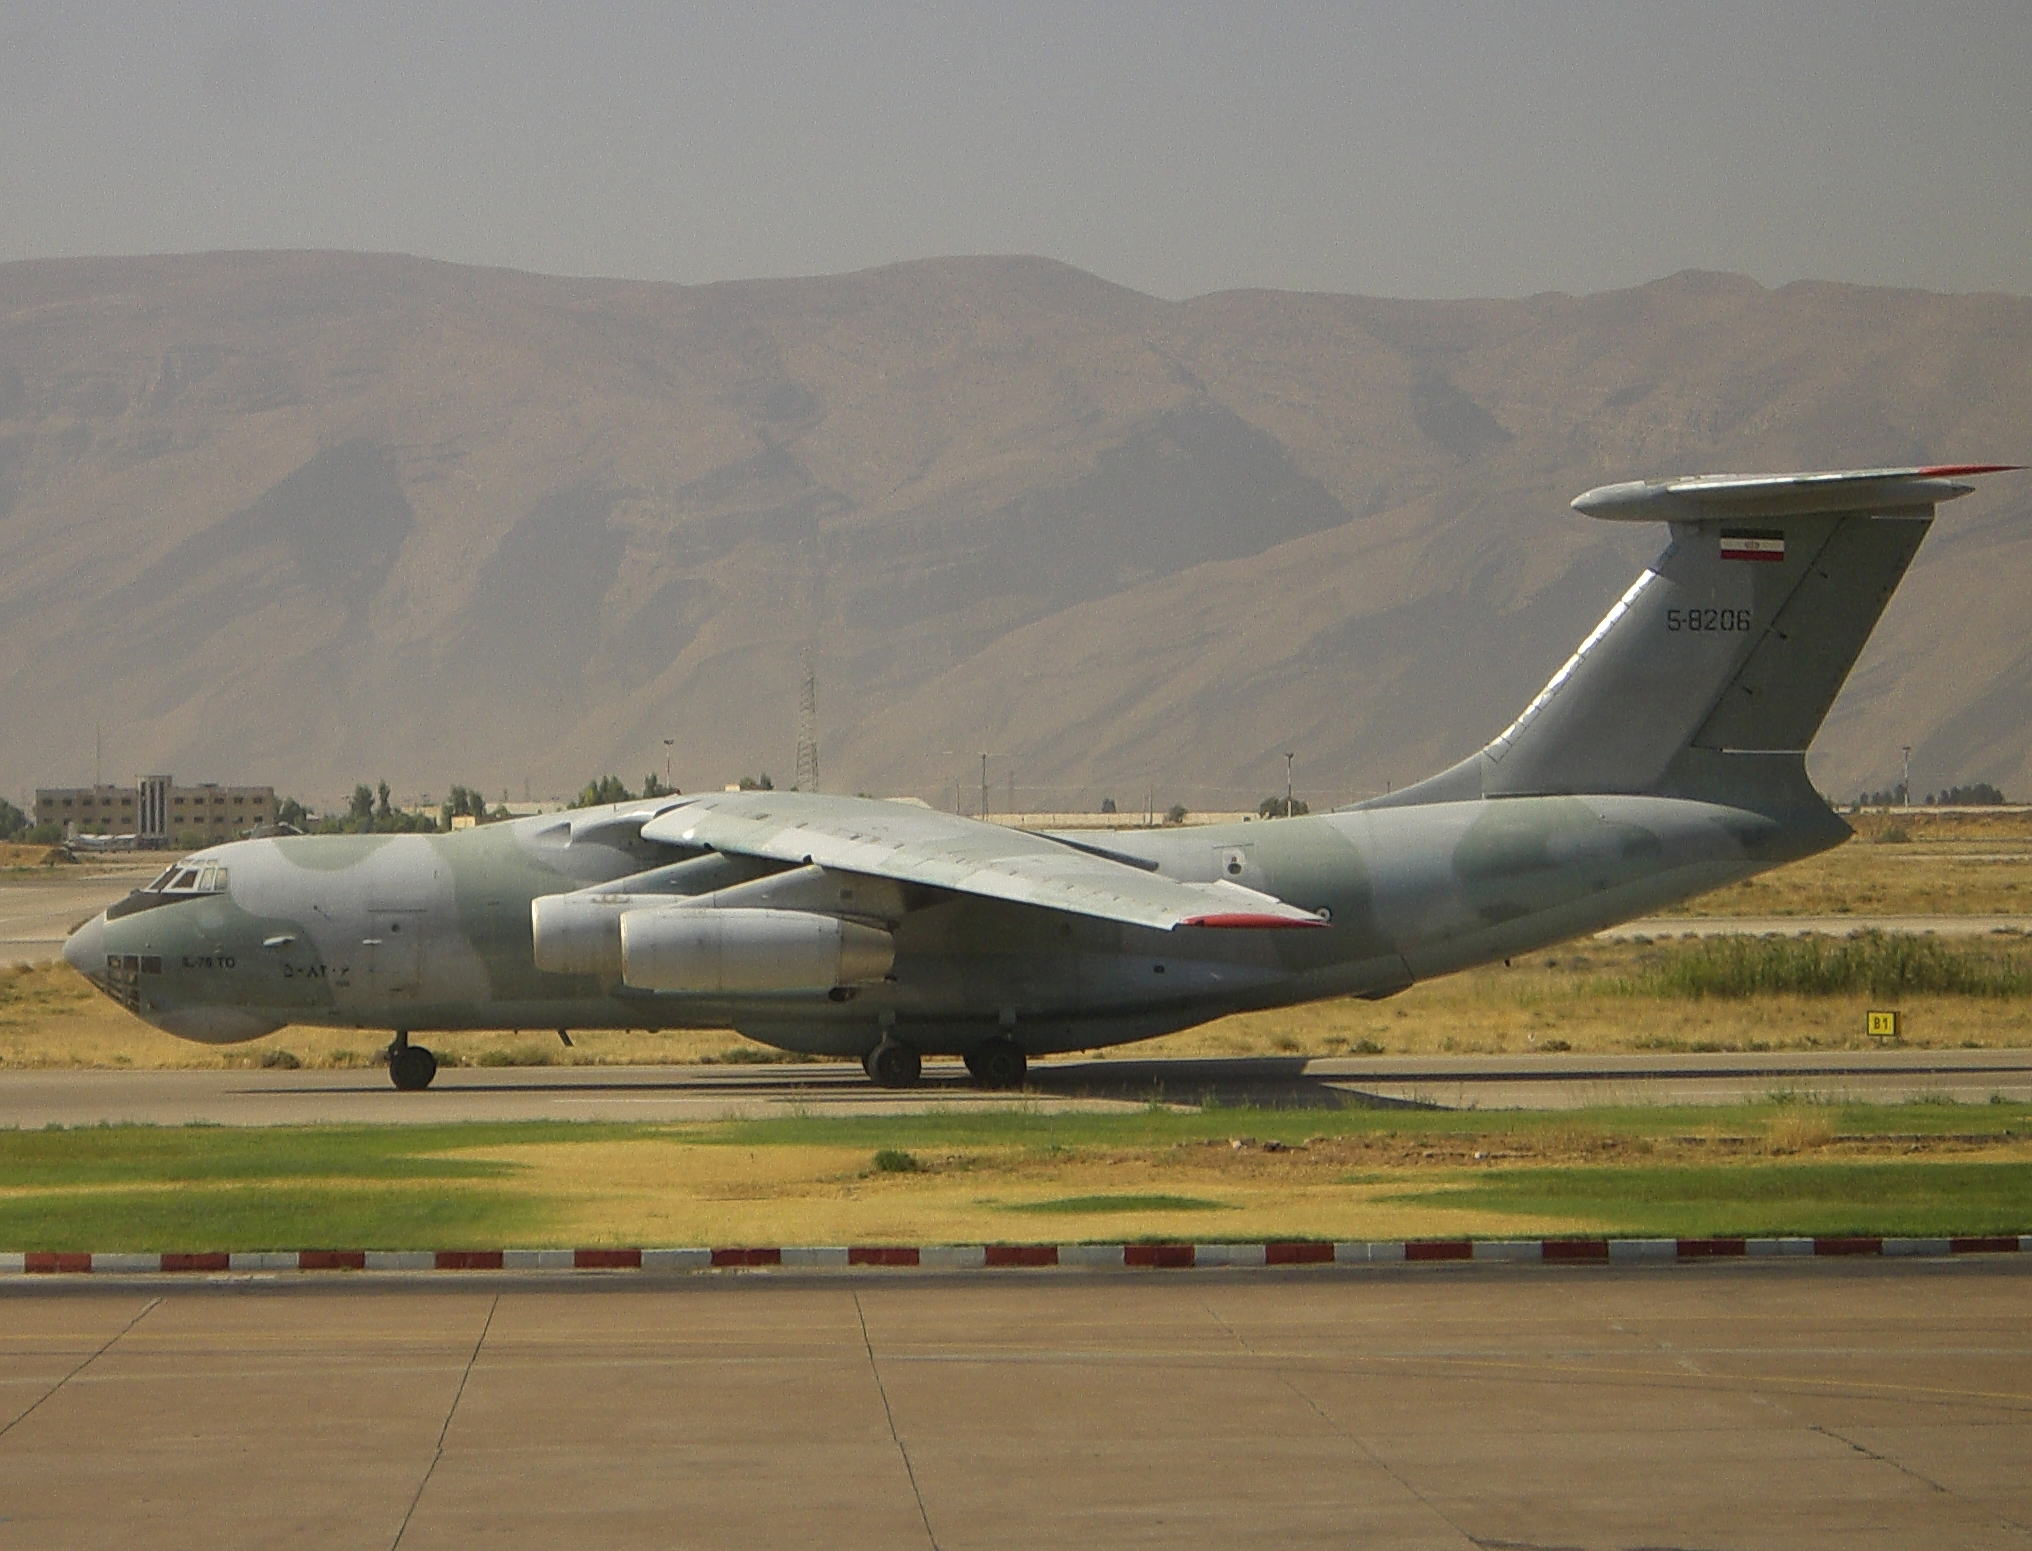 2003 Iran Illusion Il-76 Crash - Wikipedia